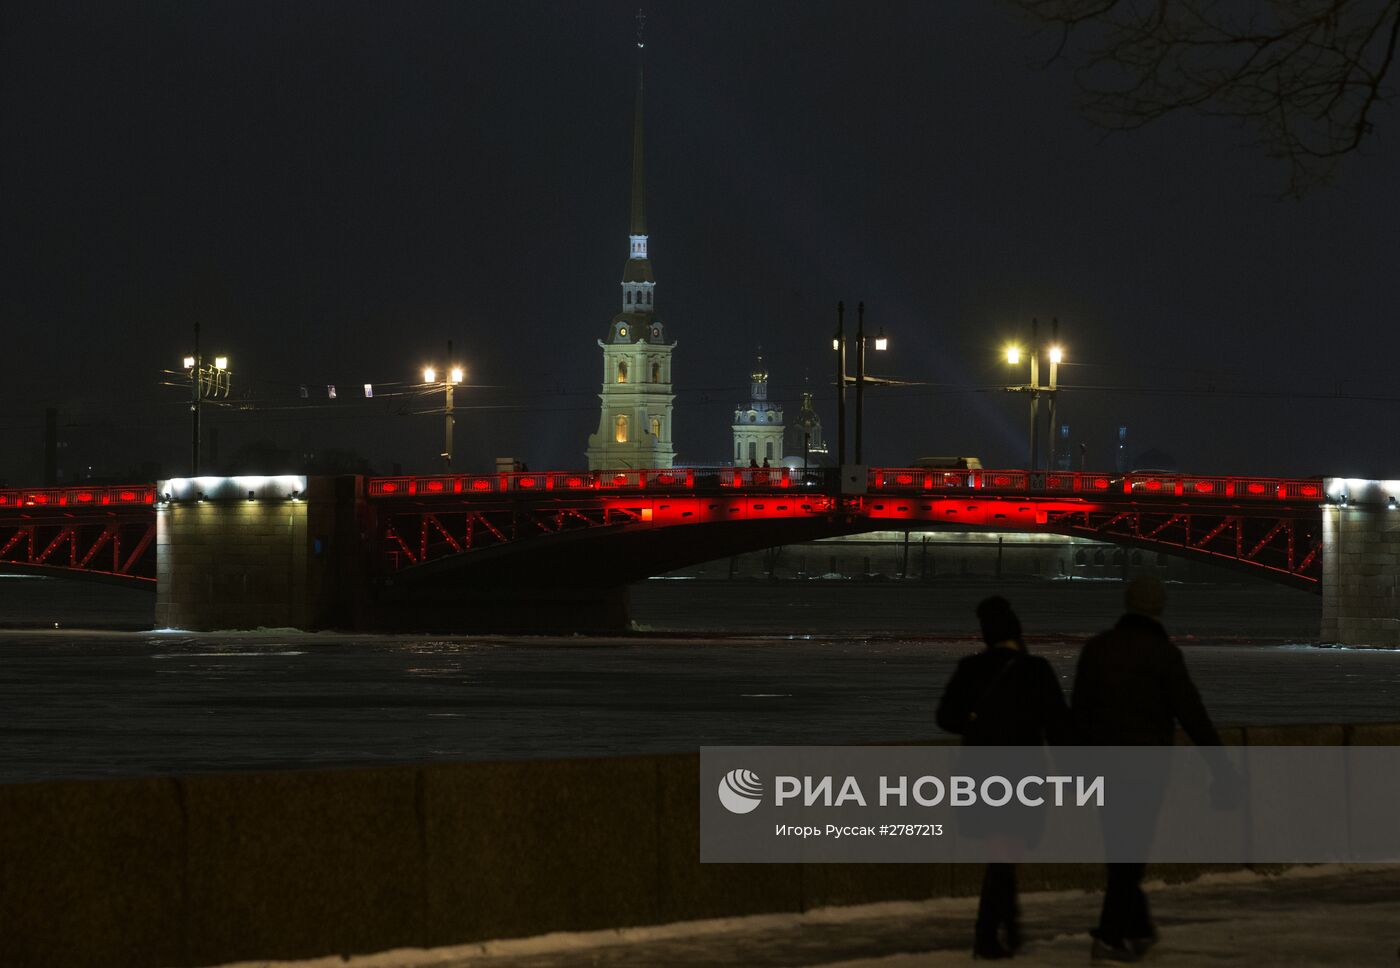 Дворцовый мост окрасился в красный цвет в честь китайского Нового года